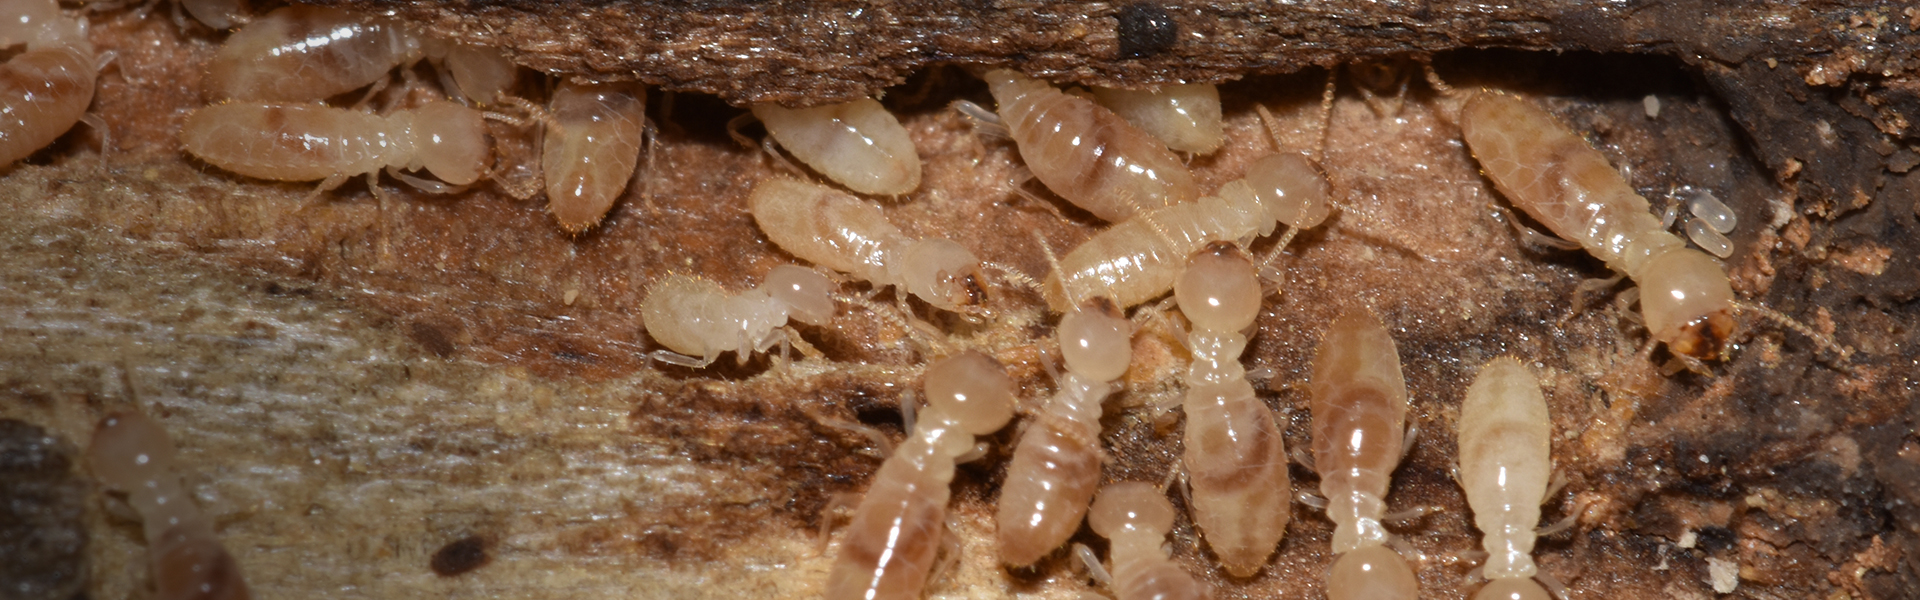 Termites-2